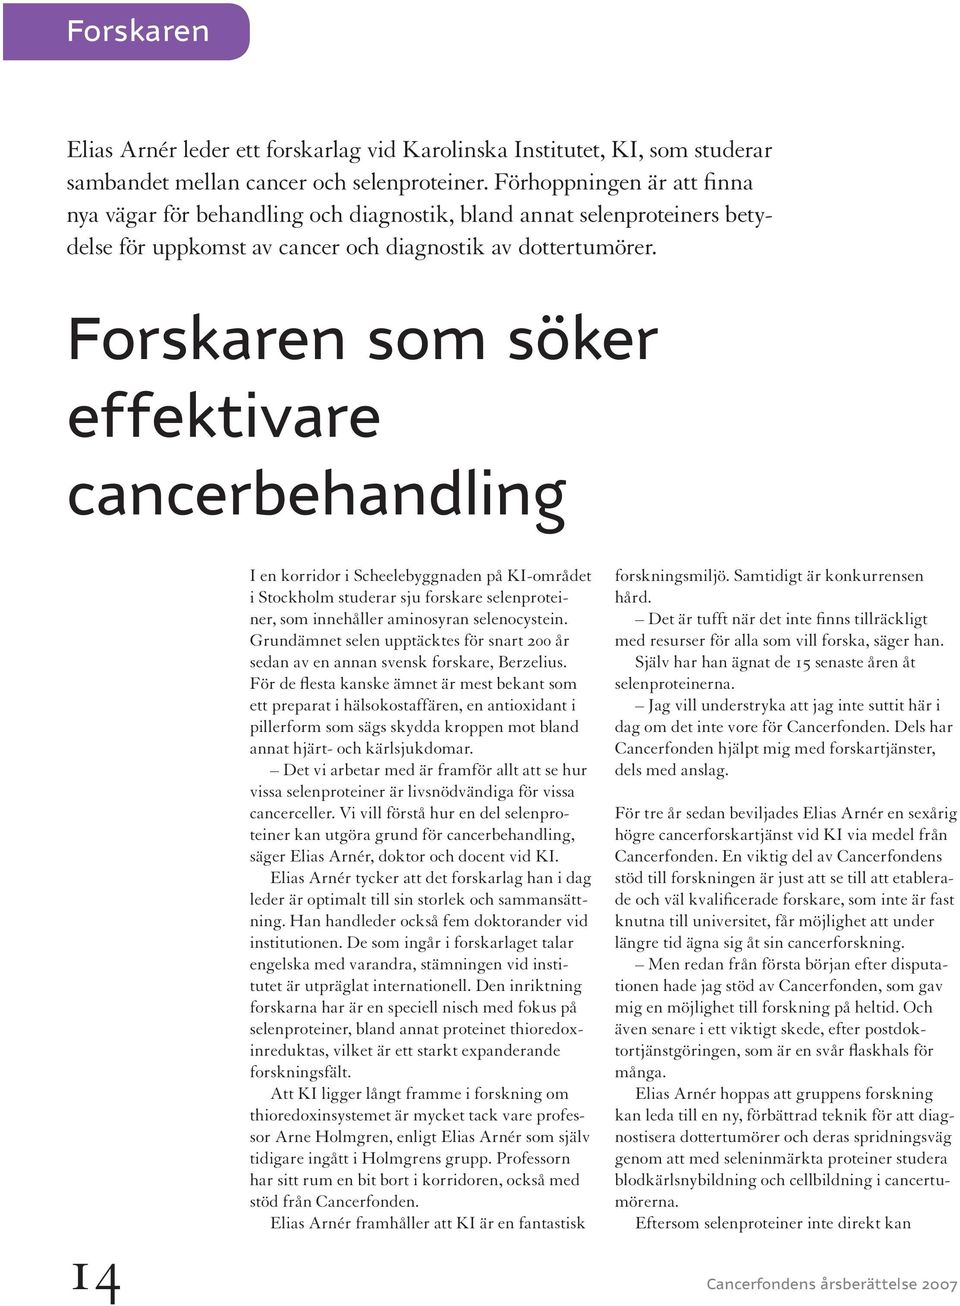 Forskaren som söker effektivare cancerbehandling 14 Cancerfondens I en korridor i Scheelebyggnaden på KI-området i Stockholm studerar sju forskare selenproteiner, som innehåller aminosyran